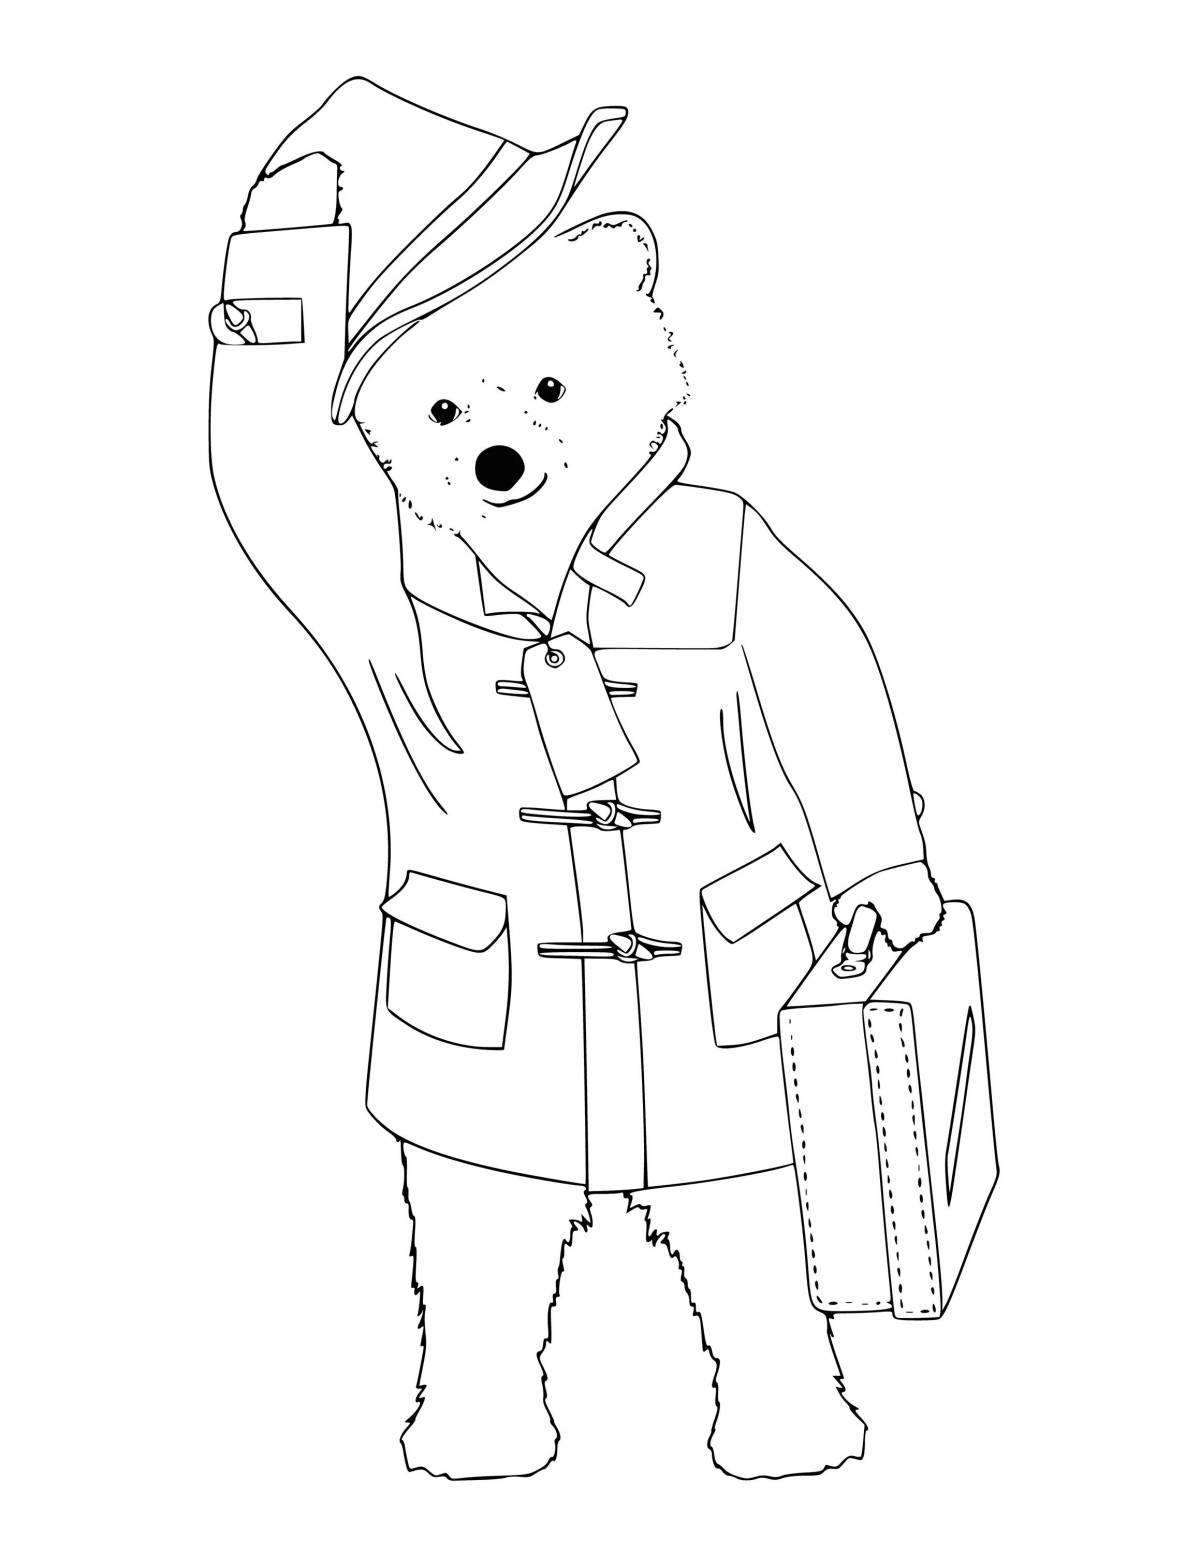 Courtesy paddington bear coloring book